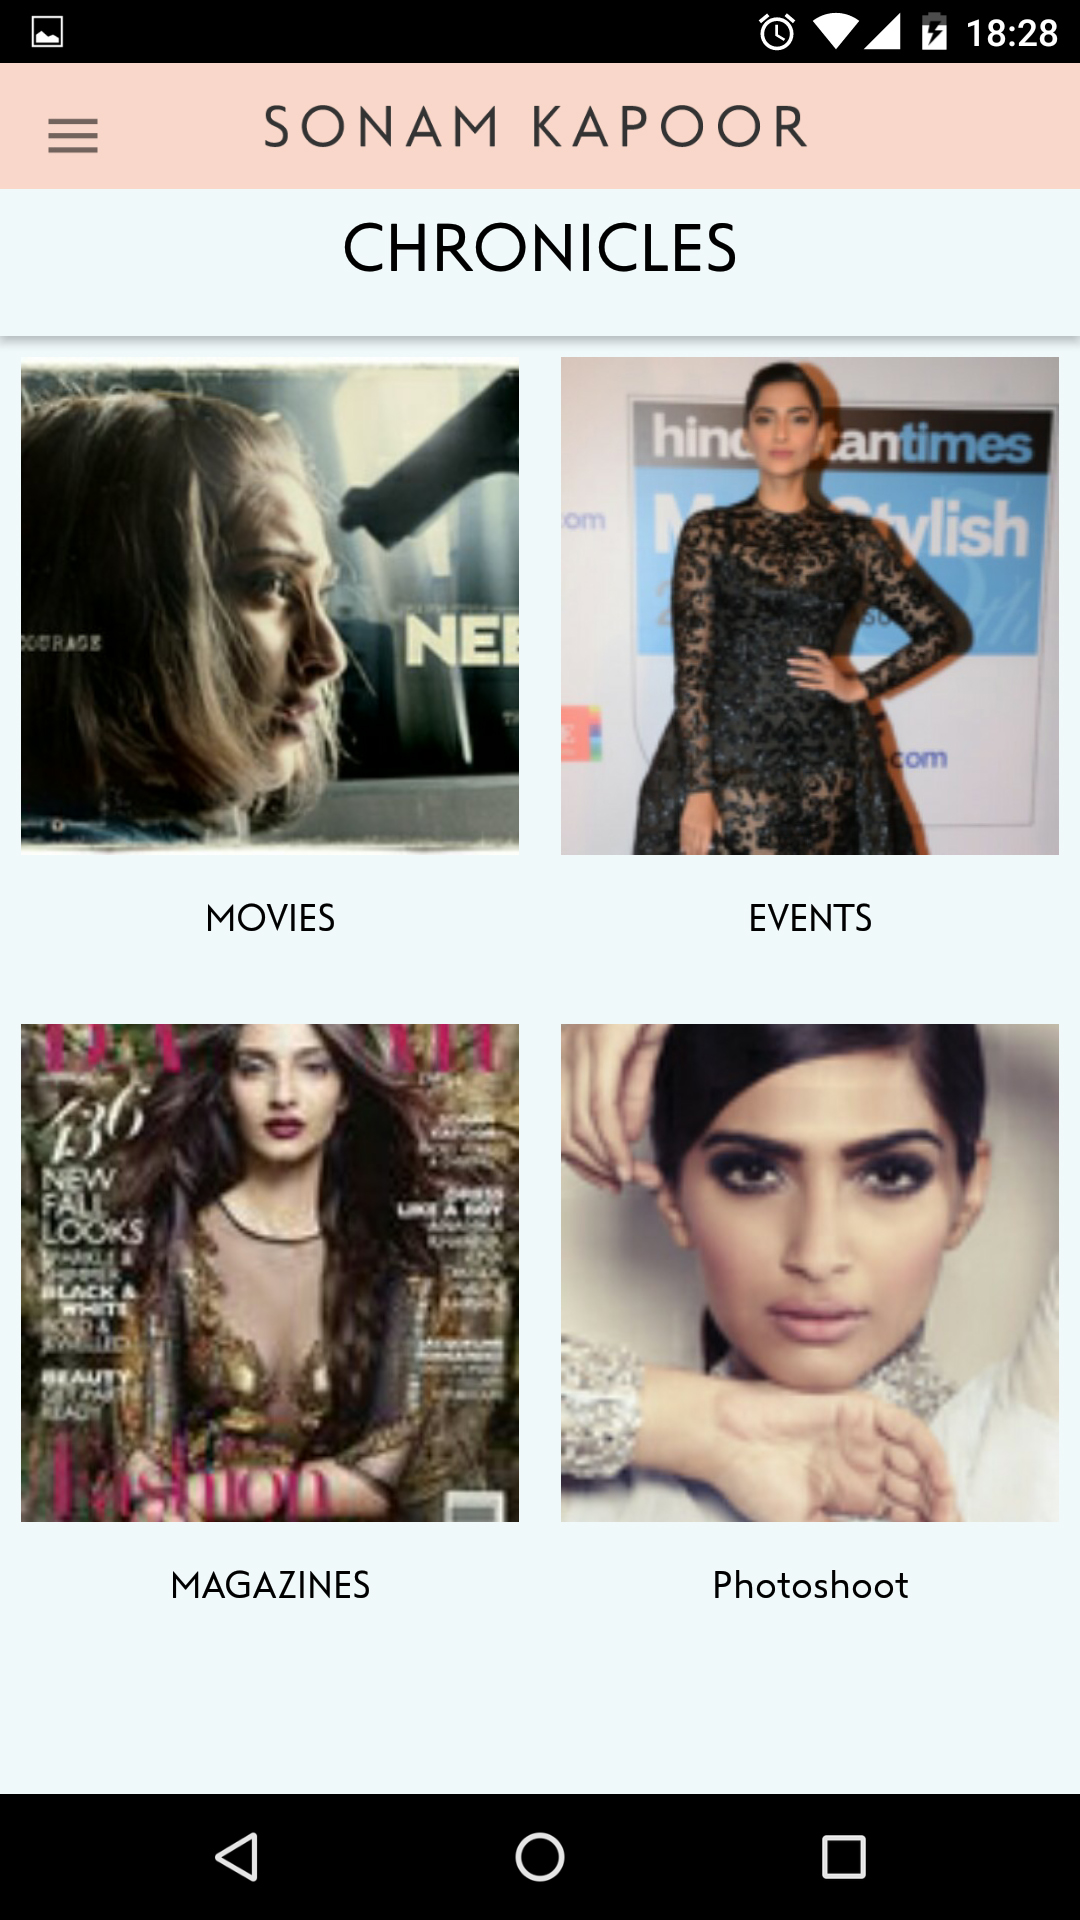 Sonam Kapoor launches app